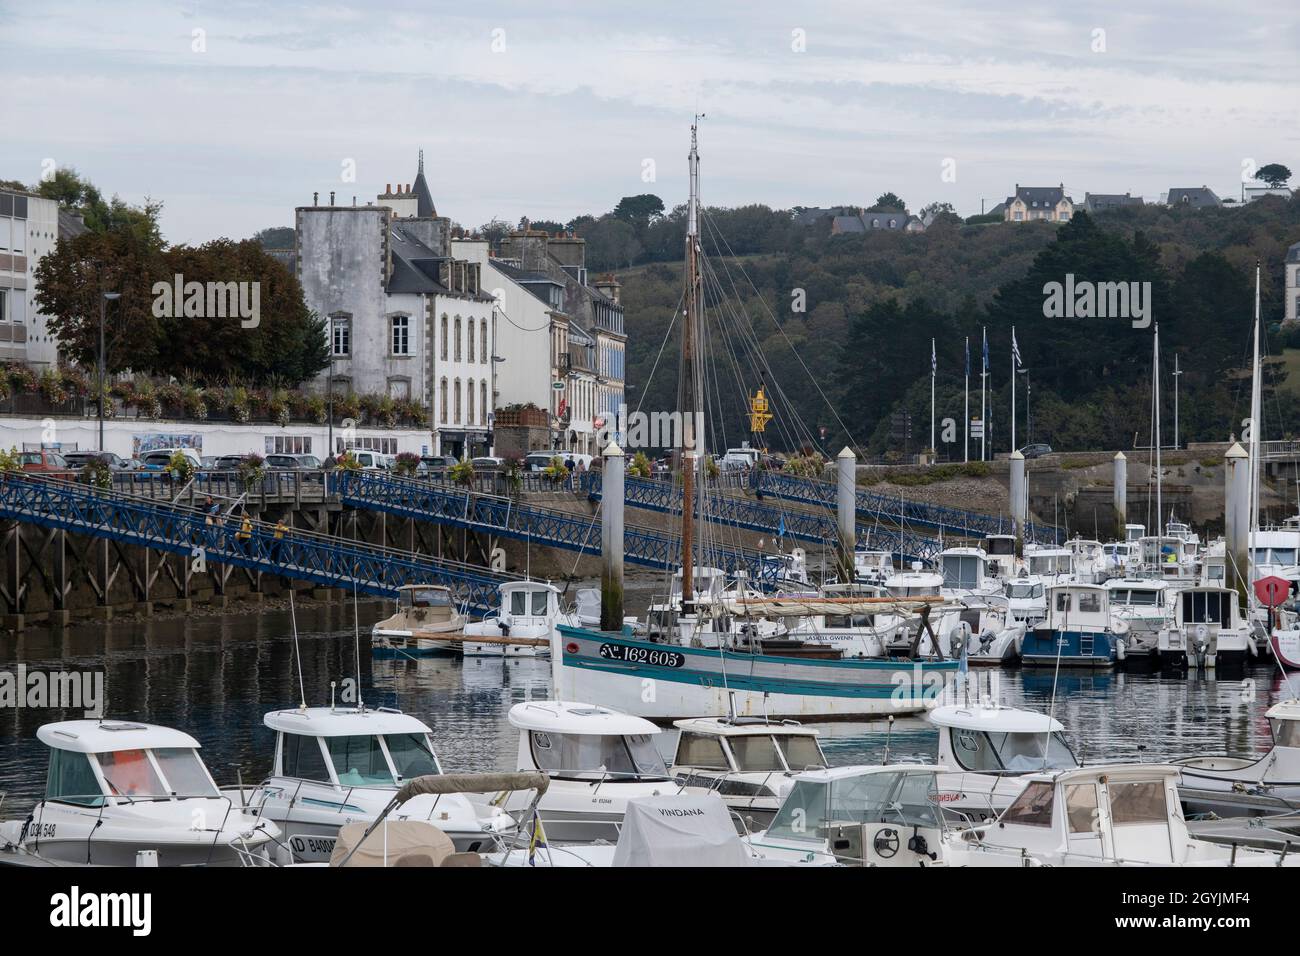 Petits bateaux et yachts dans le port de plaisance à Audierne, Bretagne,  France le 25 septembre 2021.Audierne est une commune française, située dans  le département du Finistère et la région Bretagne.Le 1er